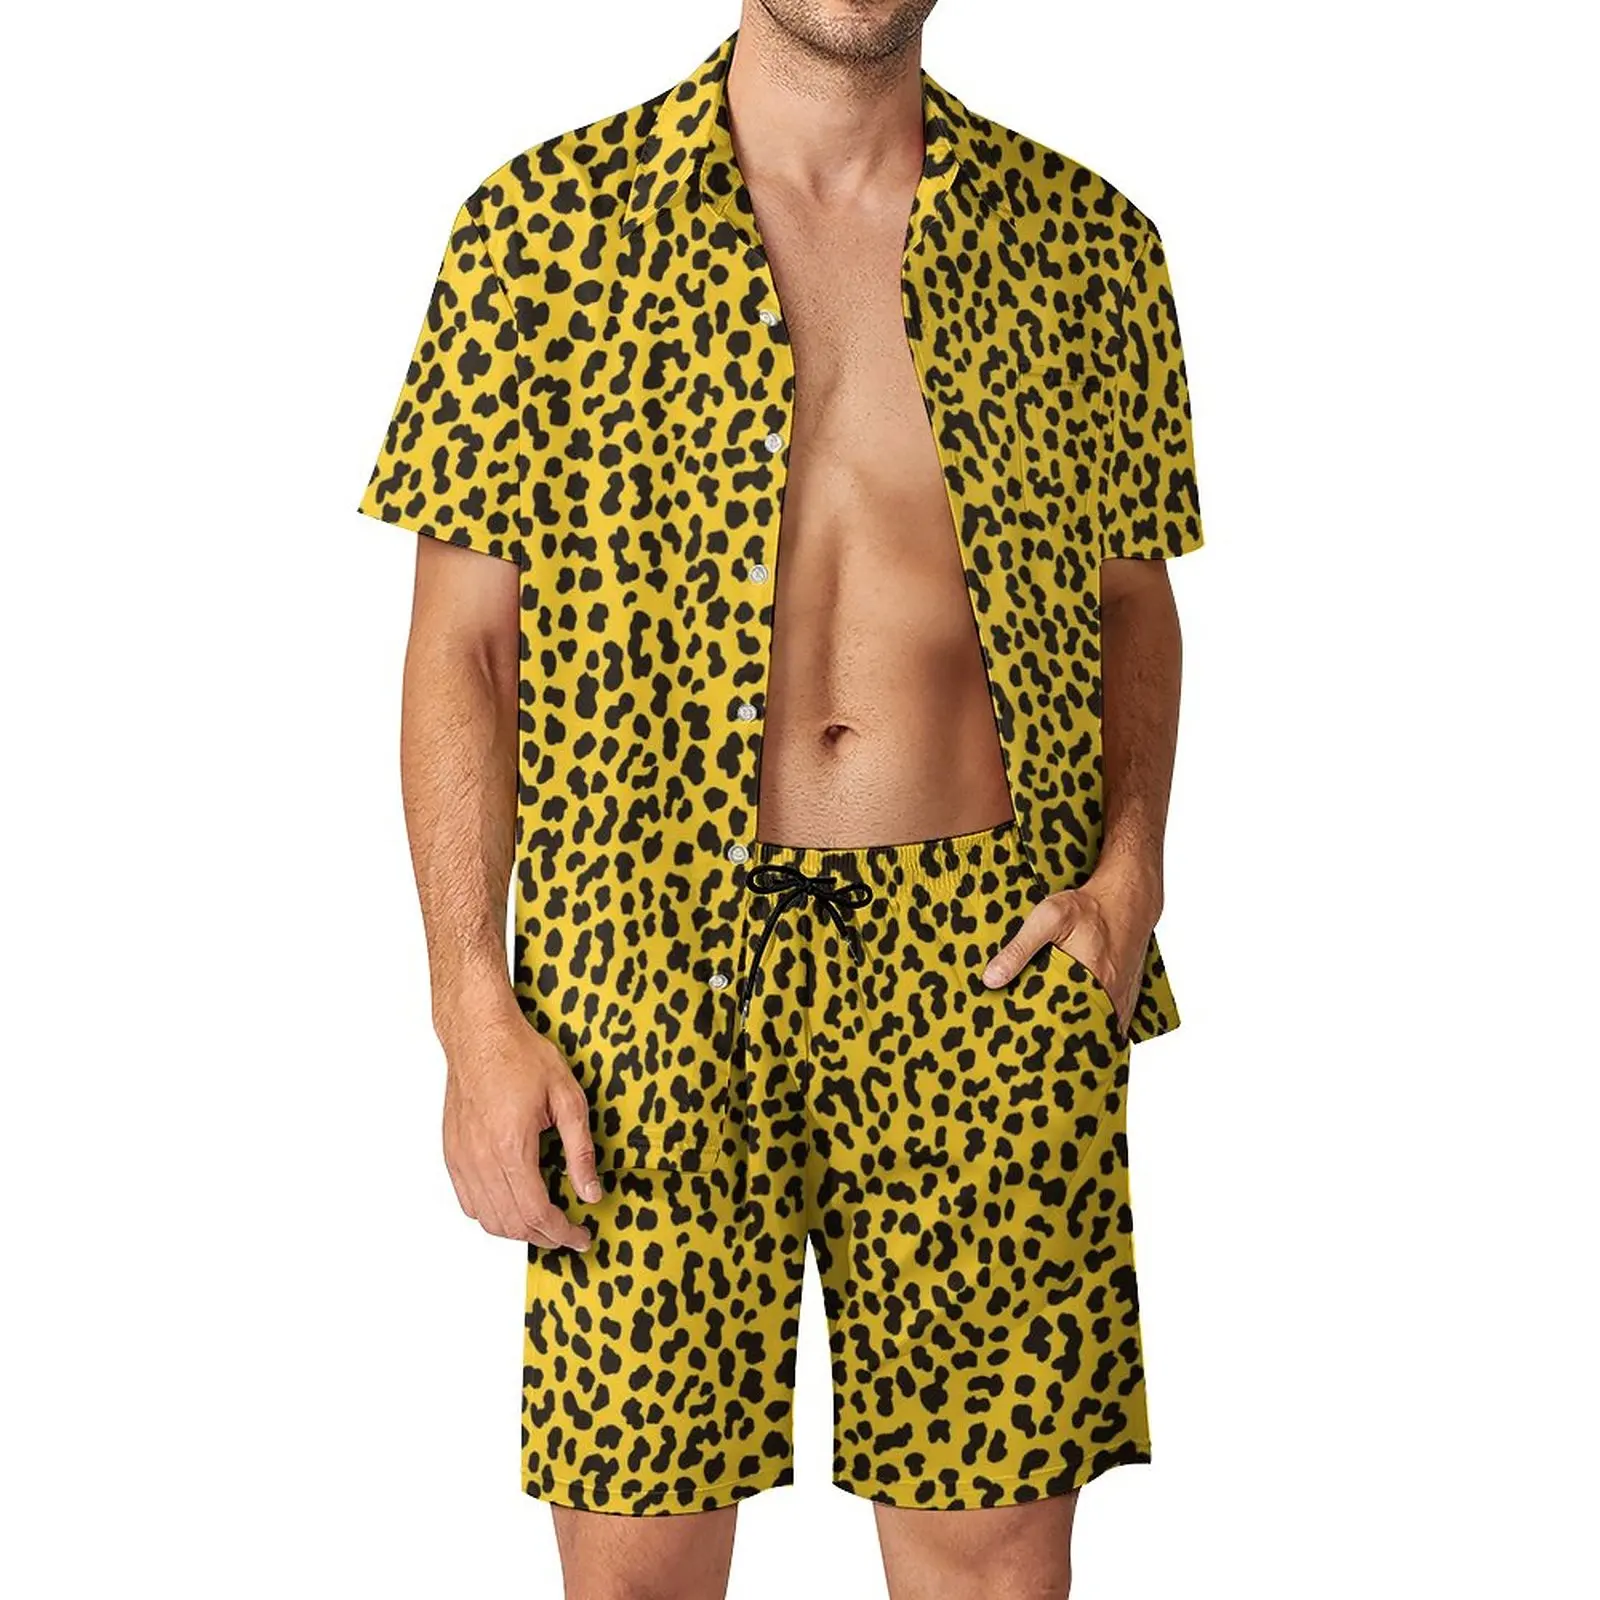 

Костюм пляжный мужской из 2 предметов, желтая Повседневная рубашка и шорты с графическим принтом, в винтажном стиле 80-х, модный костюм с леопардовым принтом, большие размеры, на лето